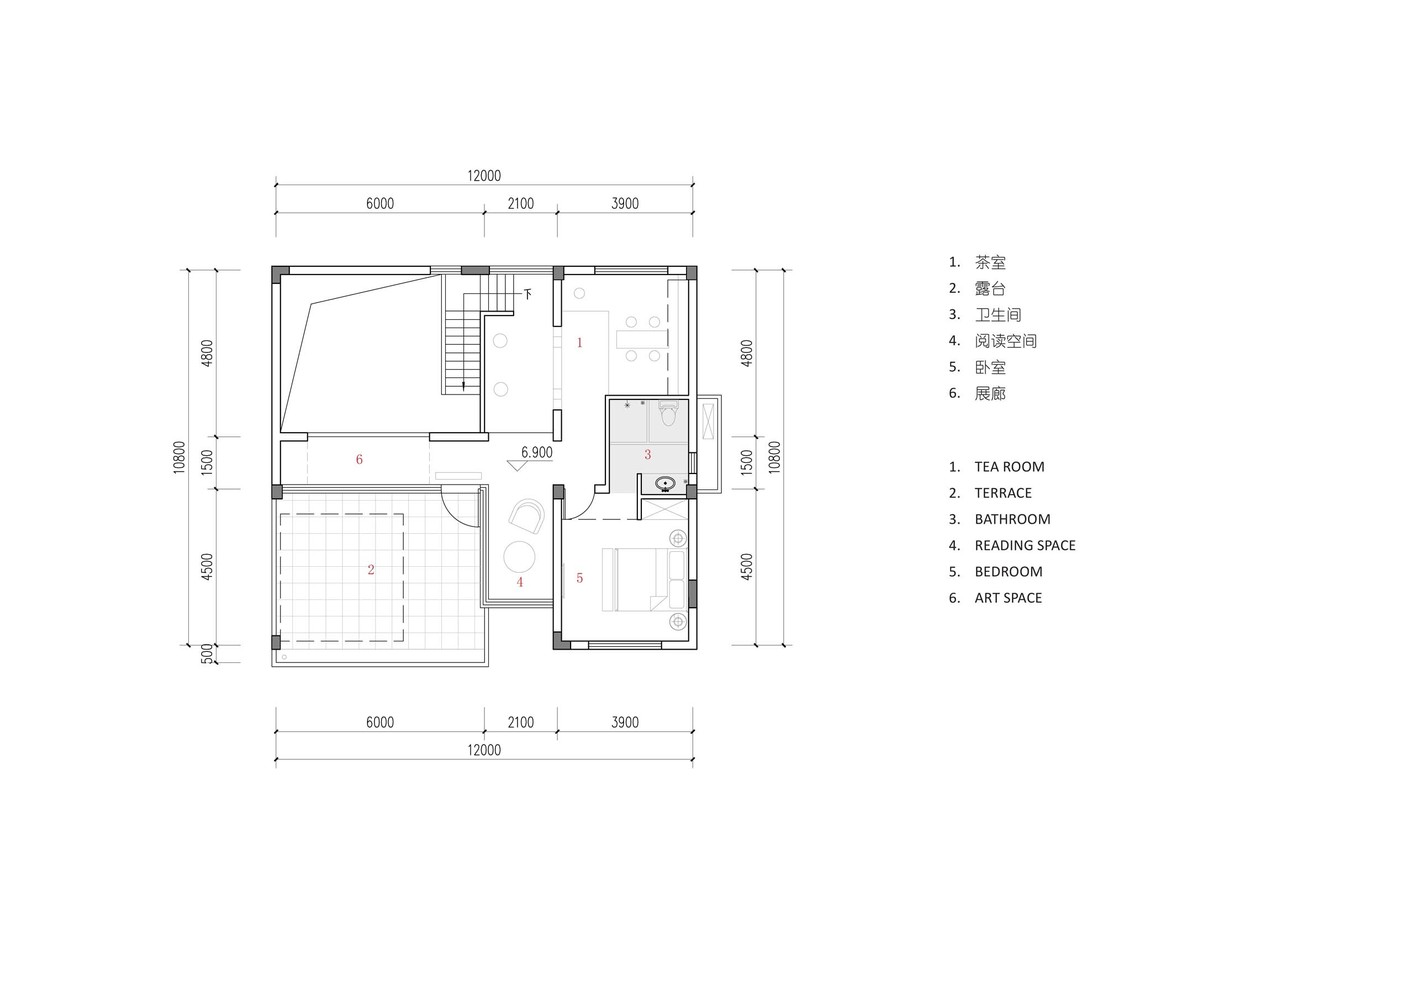 龙游后山头28号自建宅建筑设计 / 中国美术学院风景建筑设计研究总院